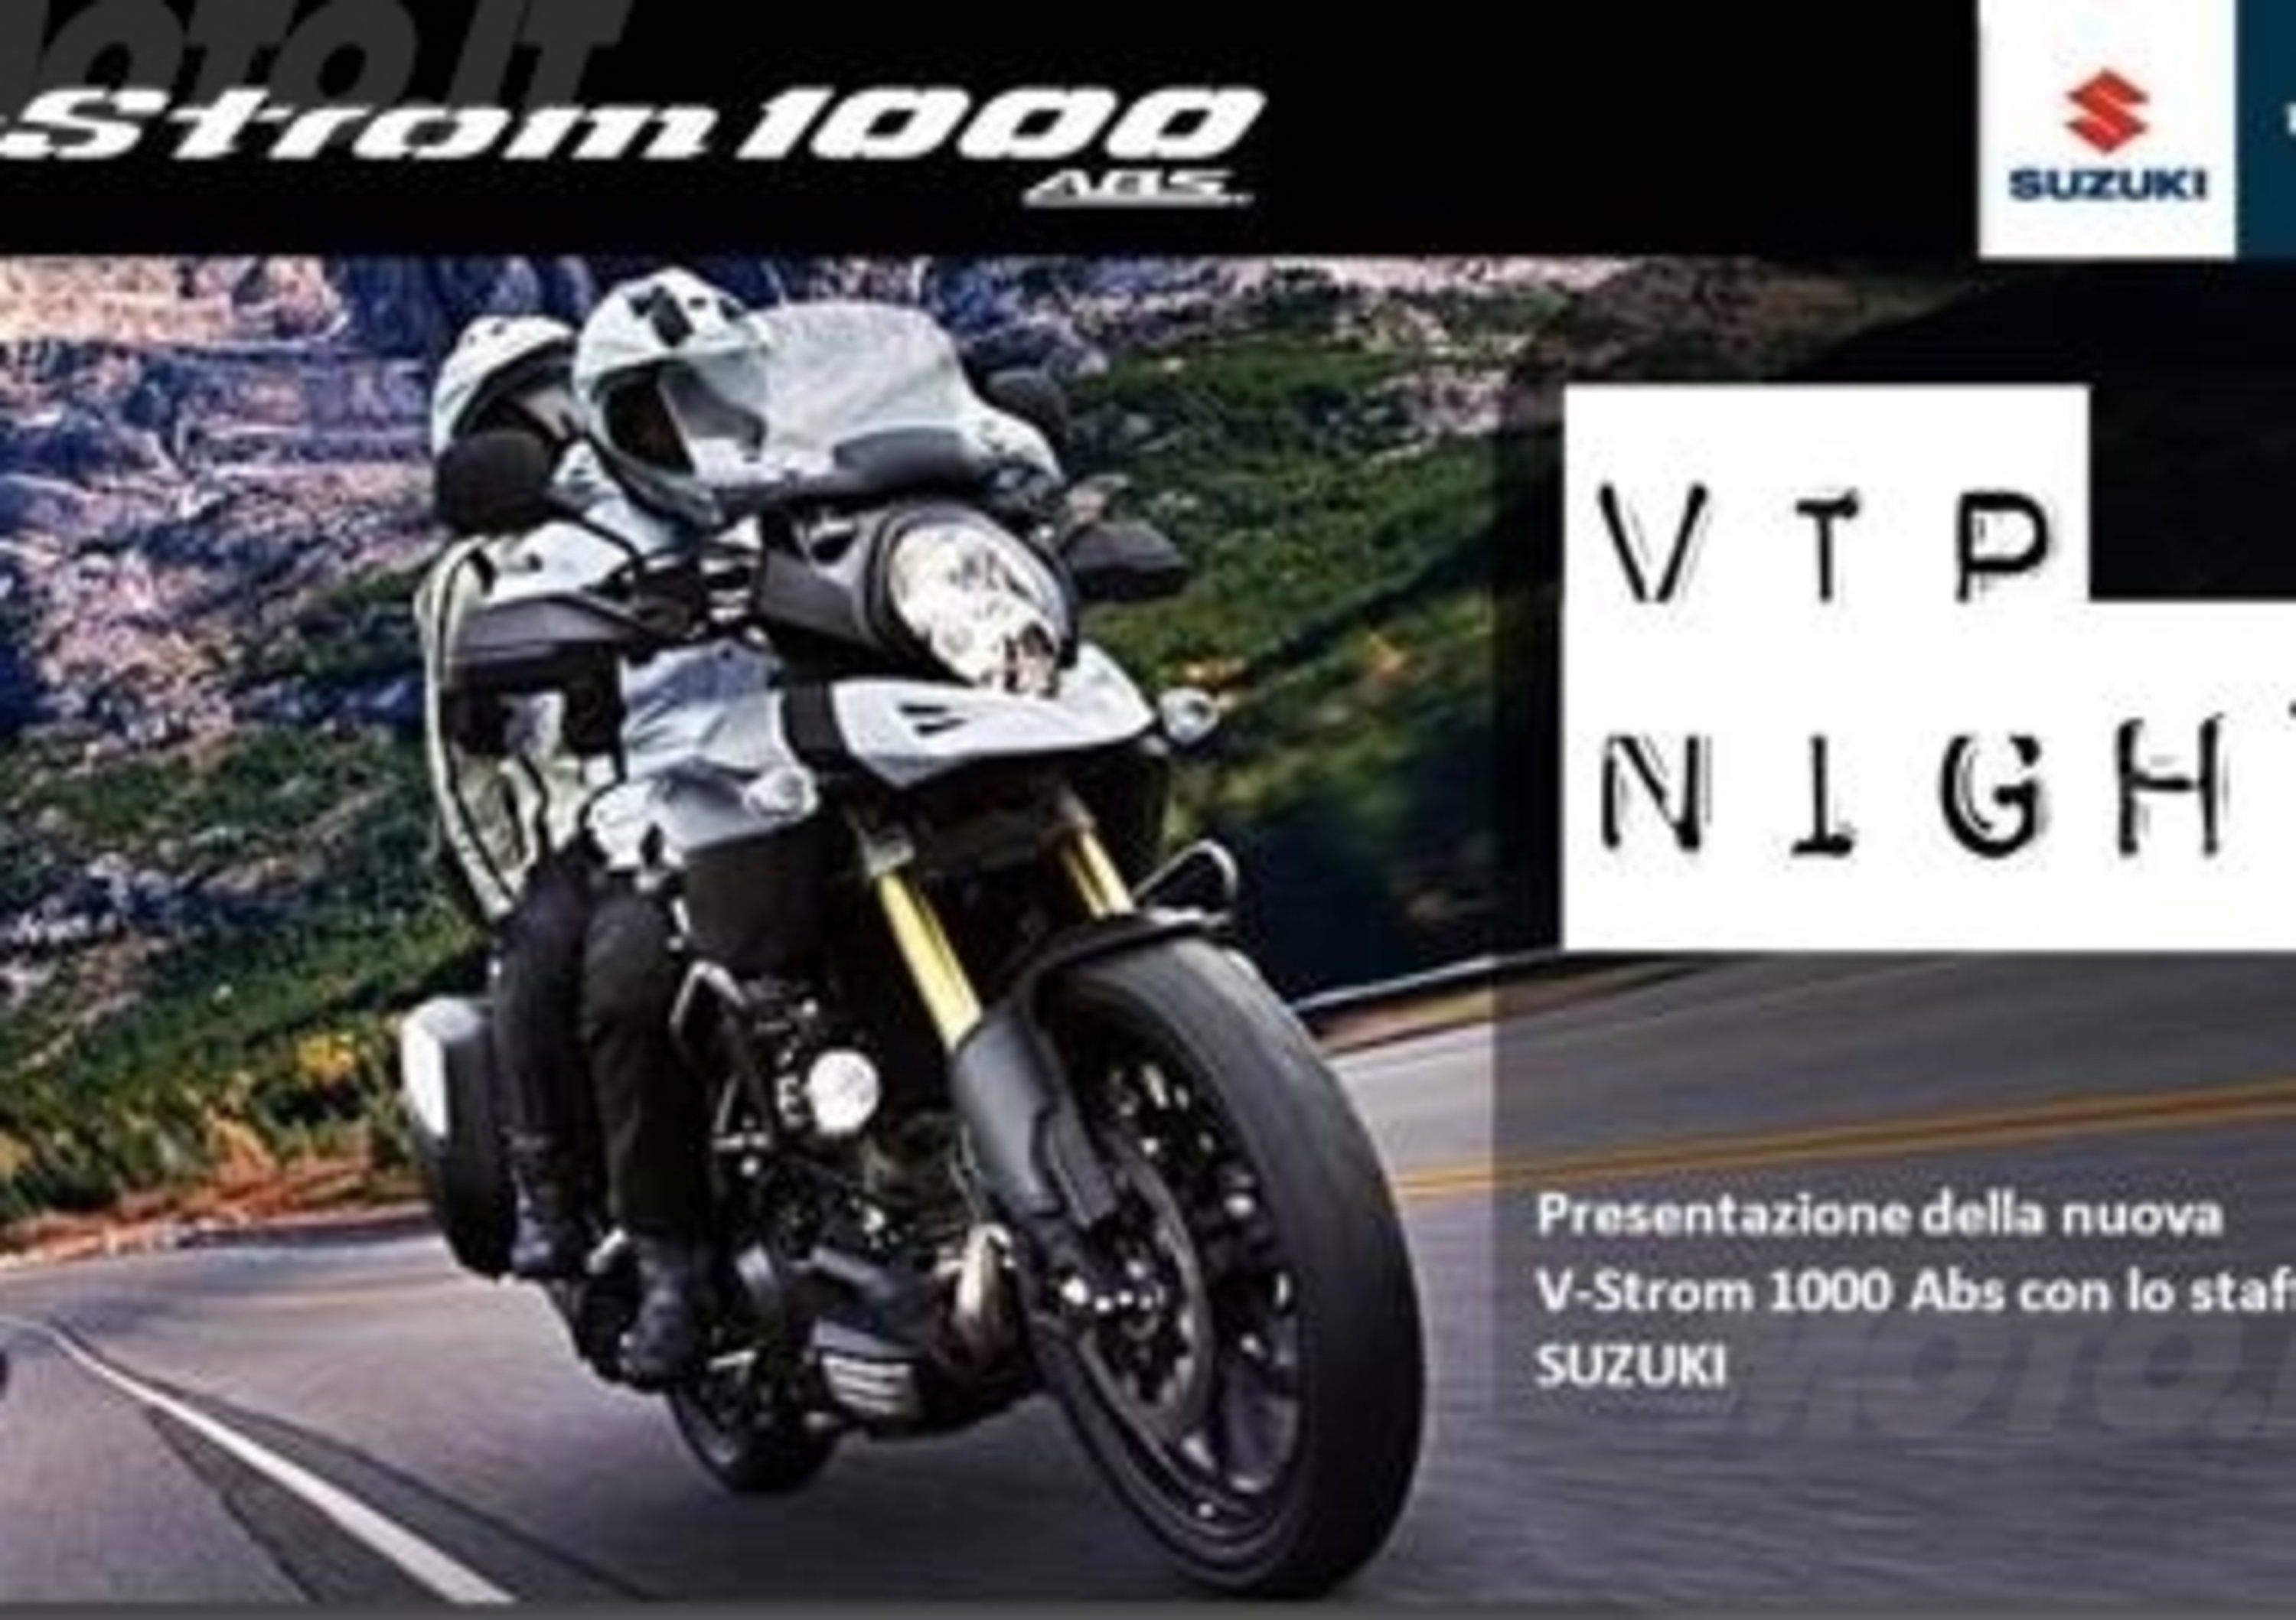 Suzuki Vip Night, l&#039;occasione per conoscere la nuova V-Strom 1000 ABS  a gennaio